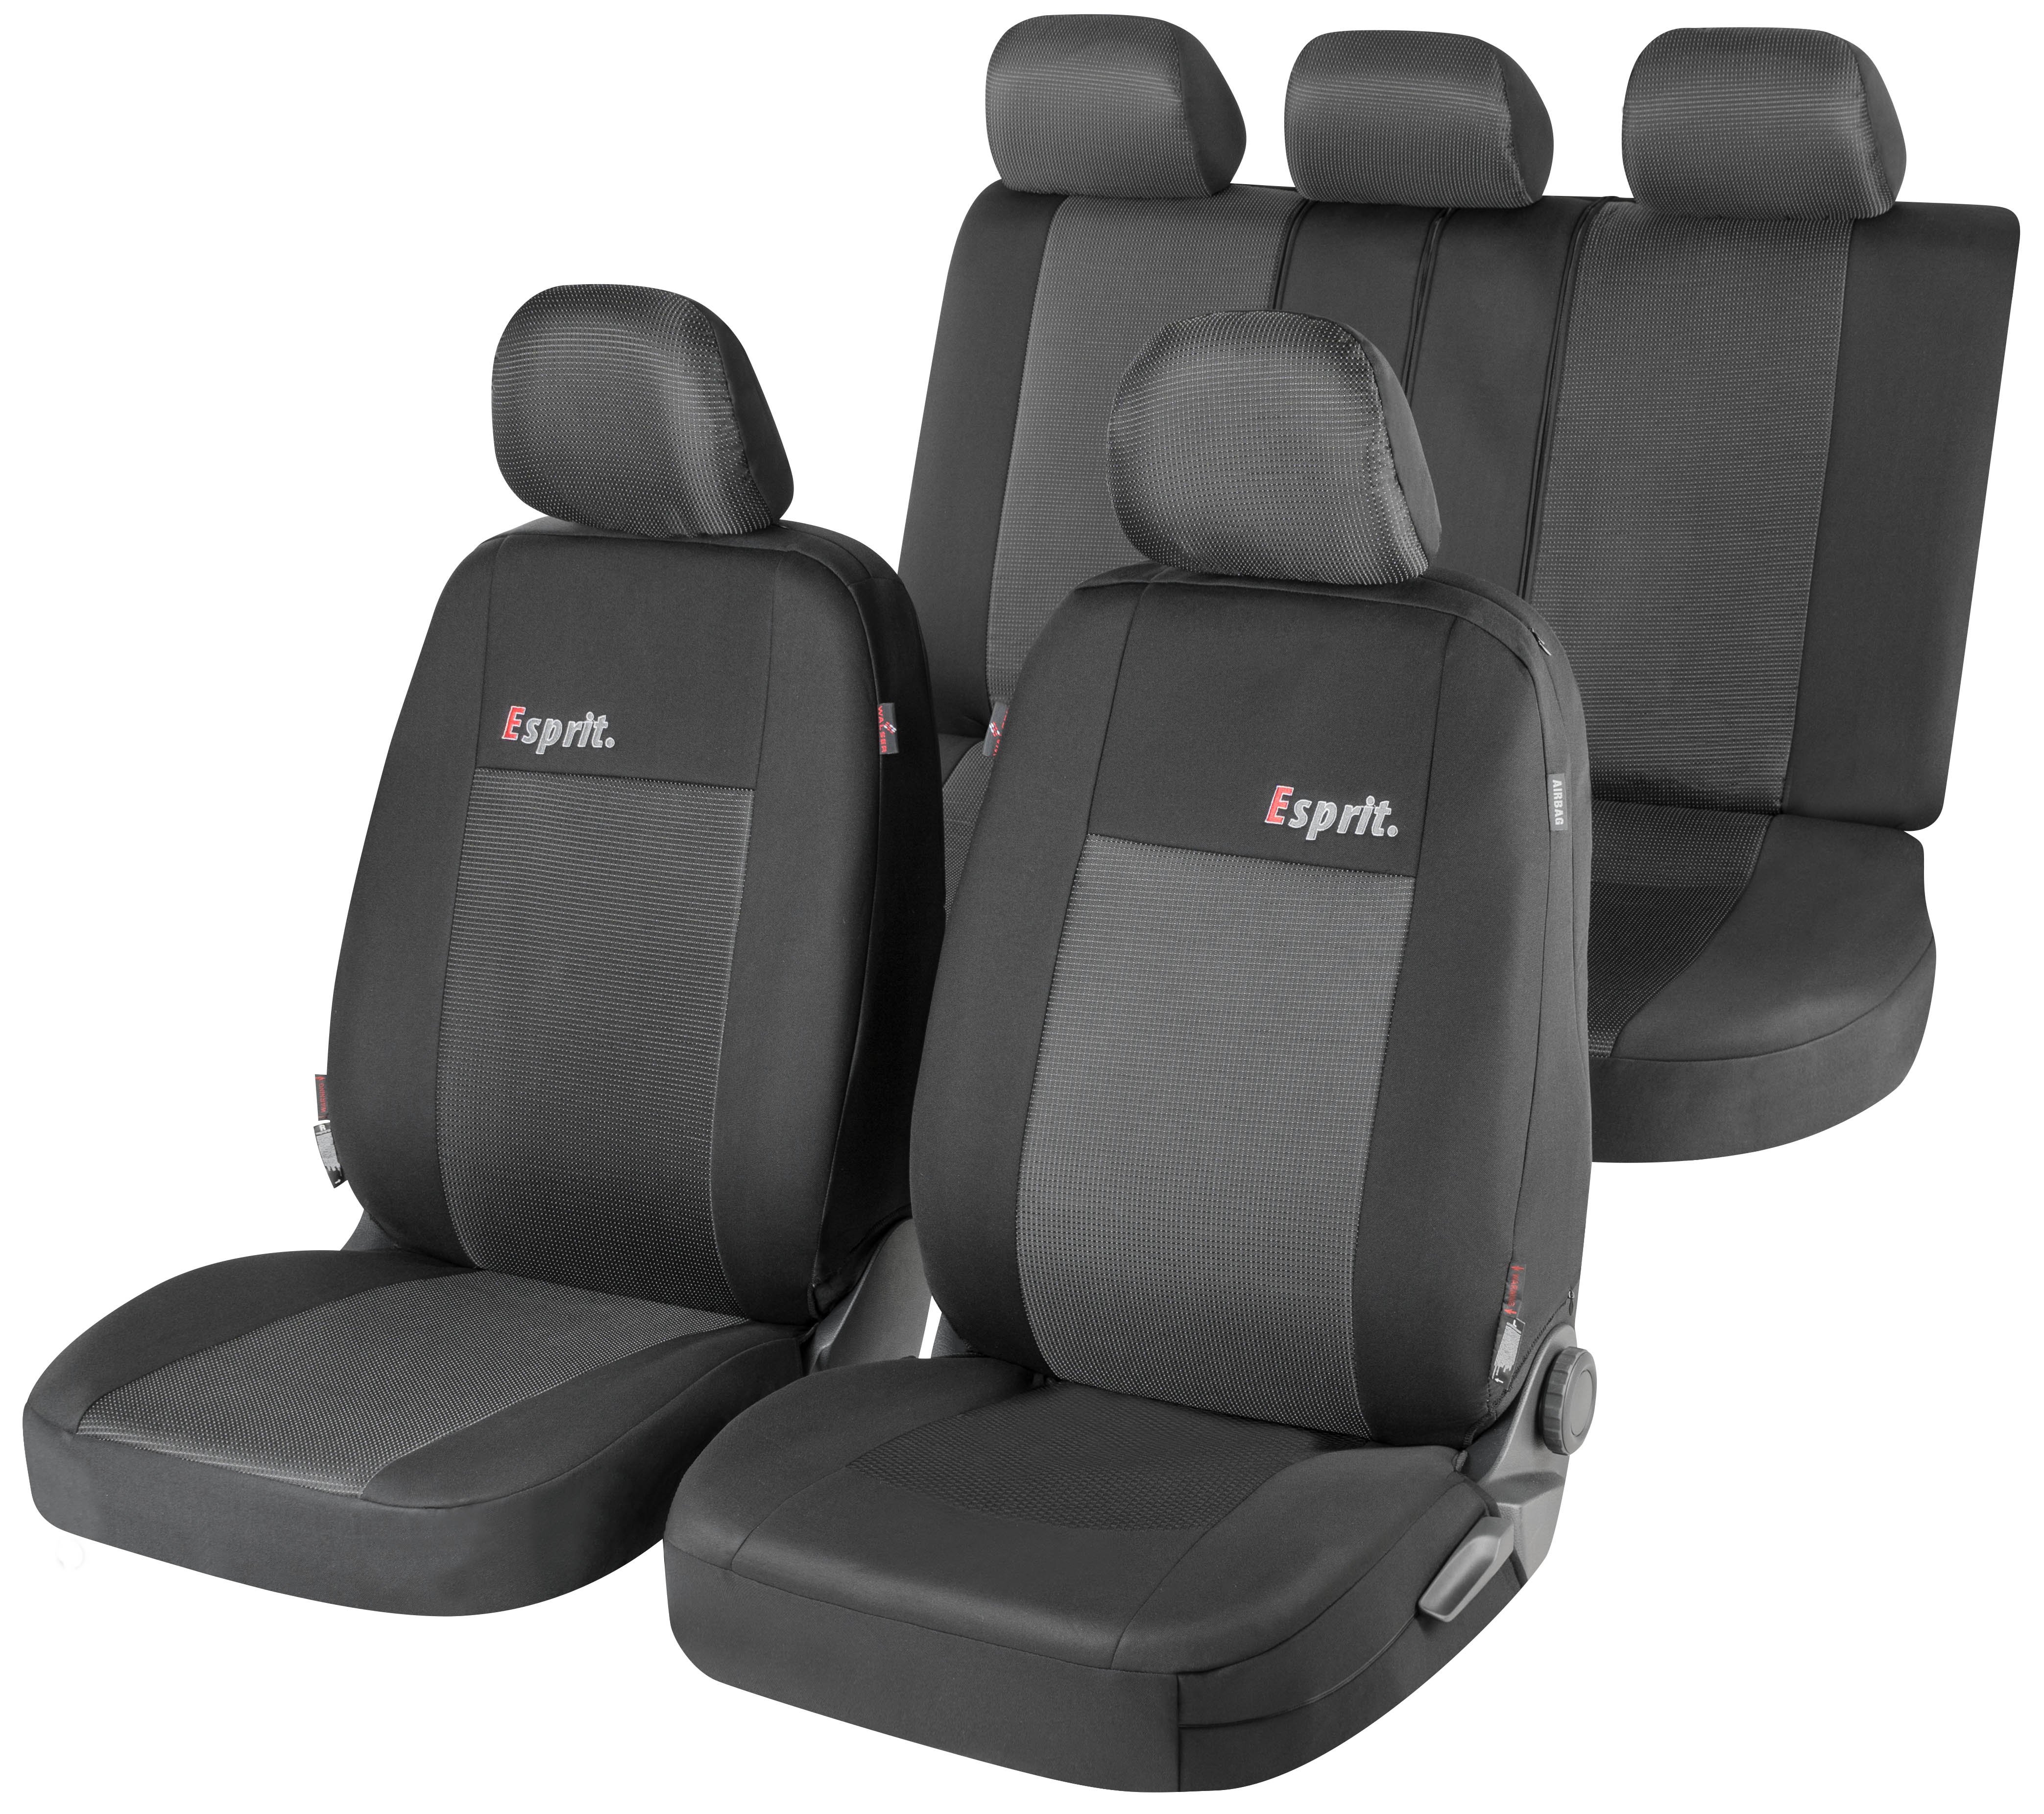 ZIPP IT Premium Esprit autostoelhoezen complete set met ritssysteem, normale zitplaatsen